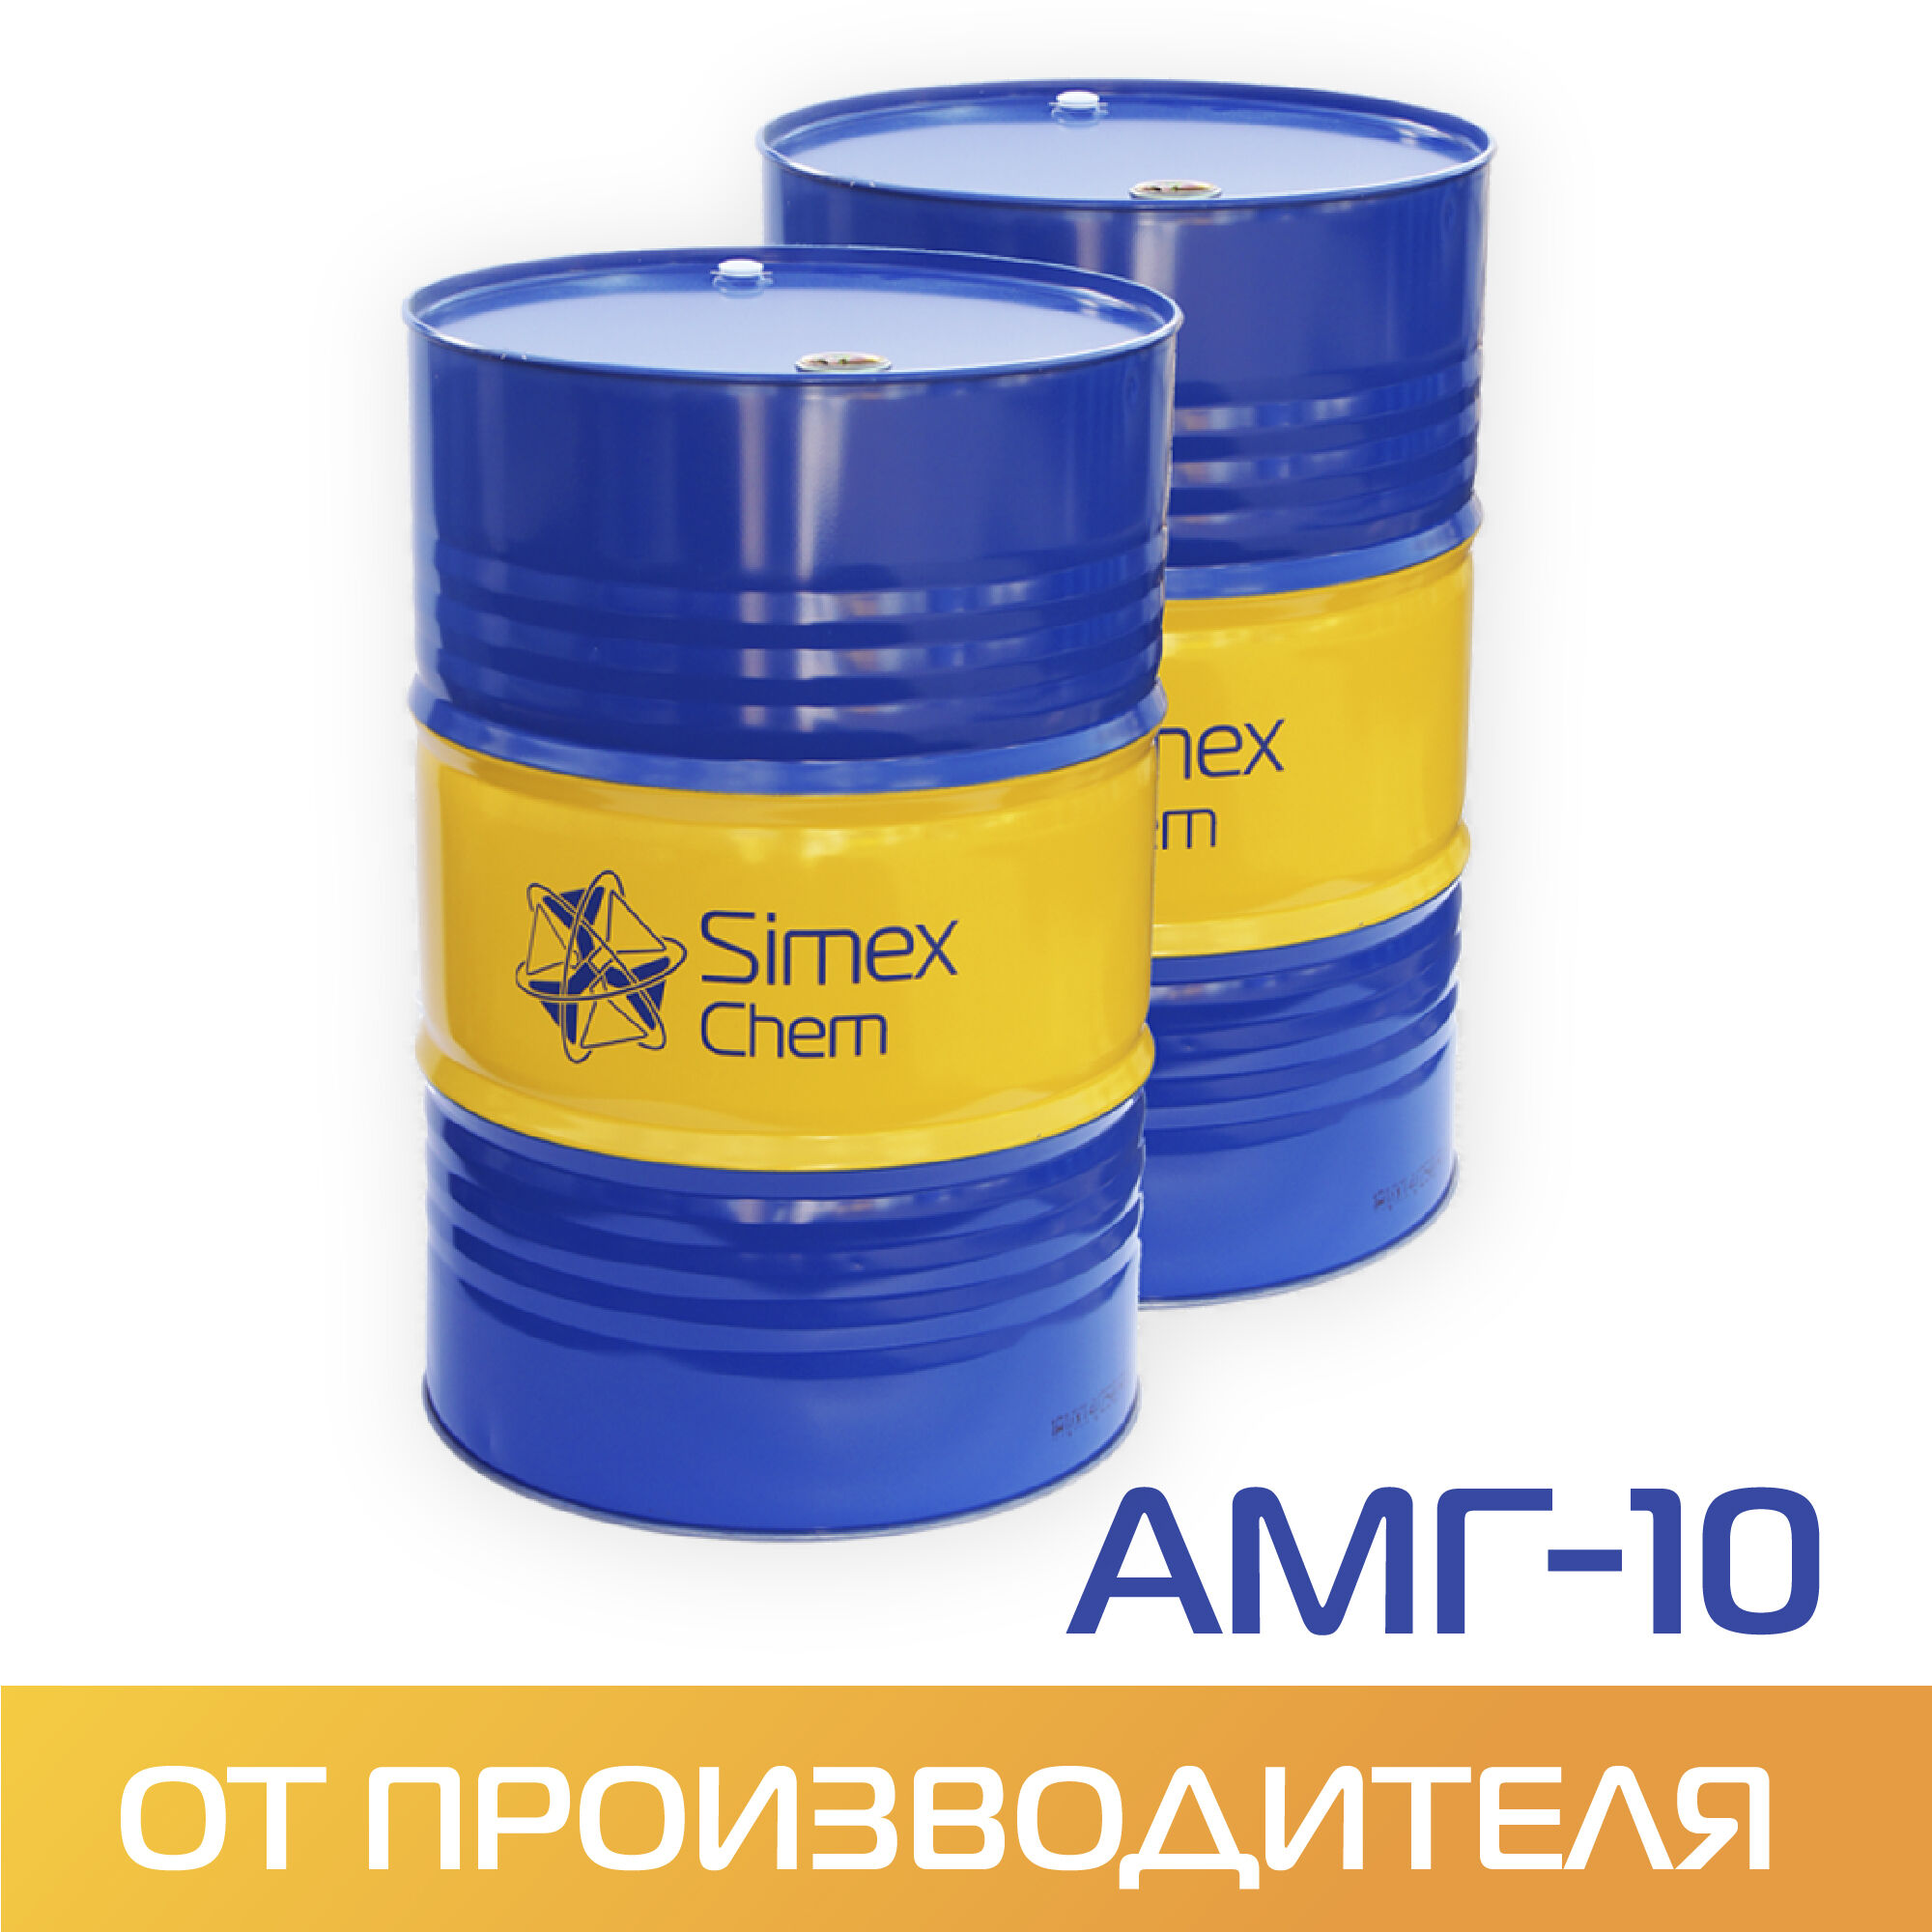 Масло для гидросистем АМГ-10 бочка 160 кг